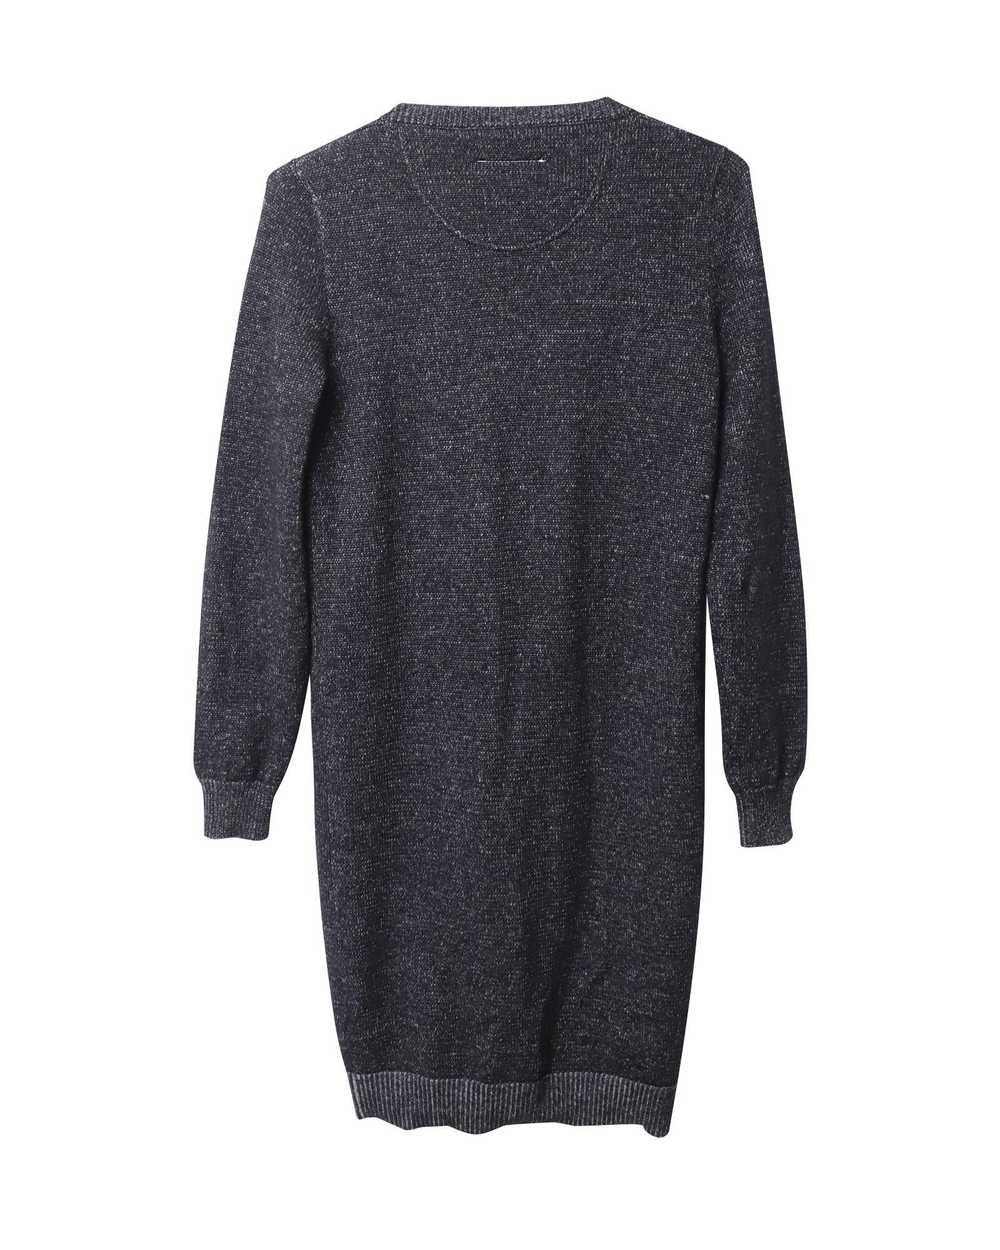 Maison Margiela Soft Knit Black Sweater Dress - image 5